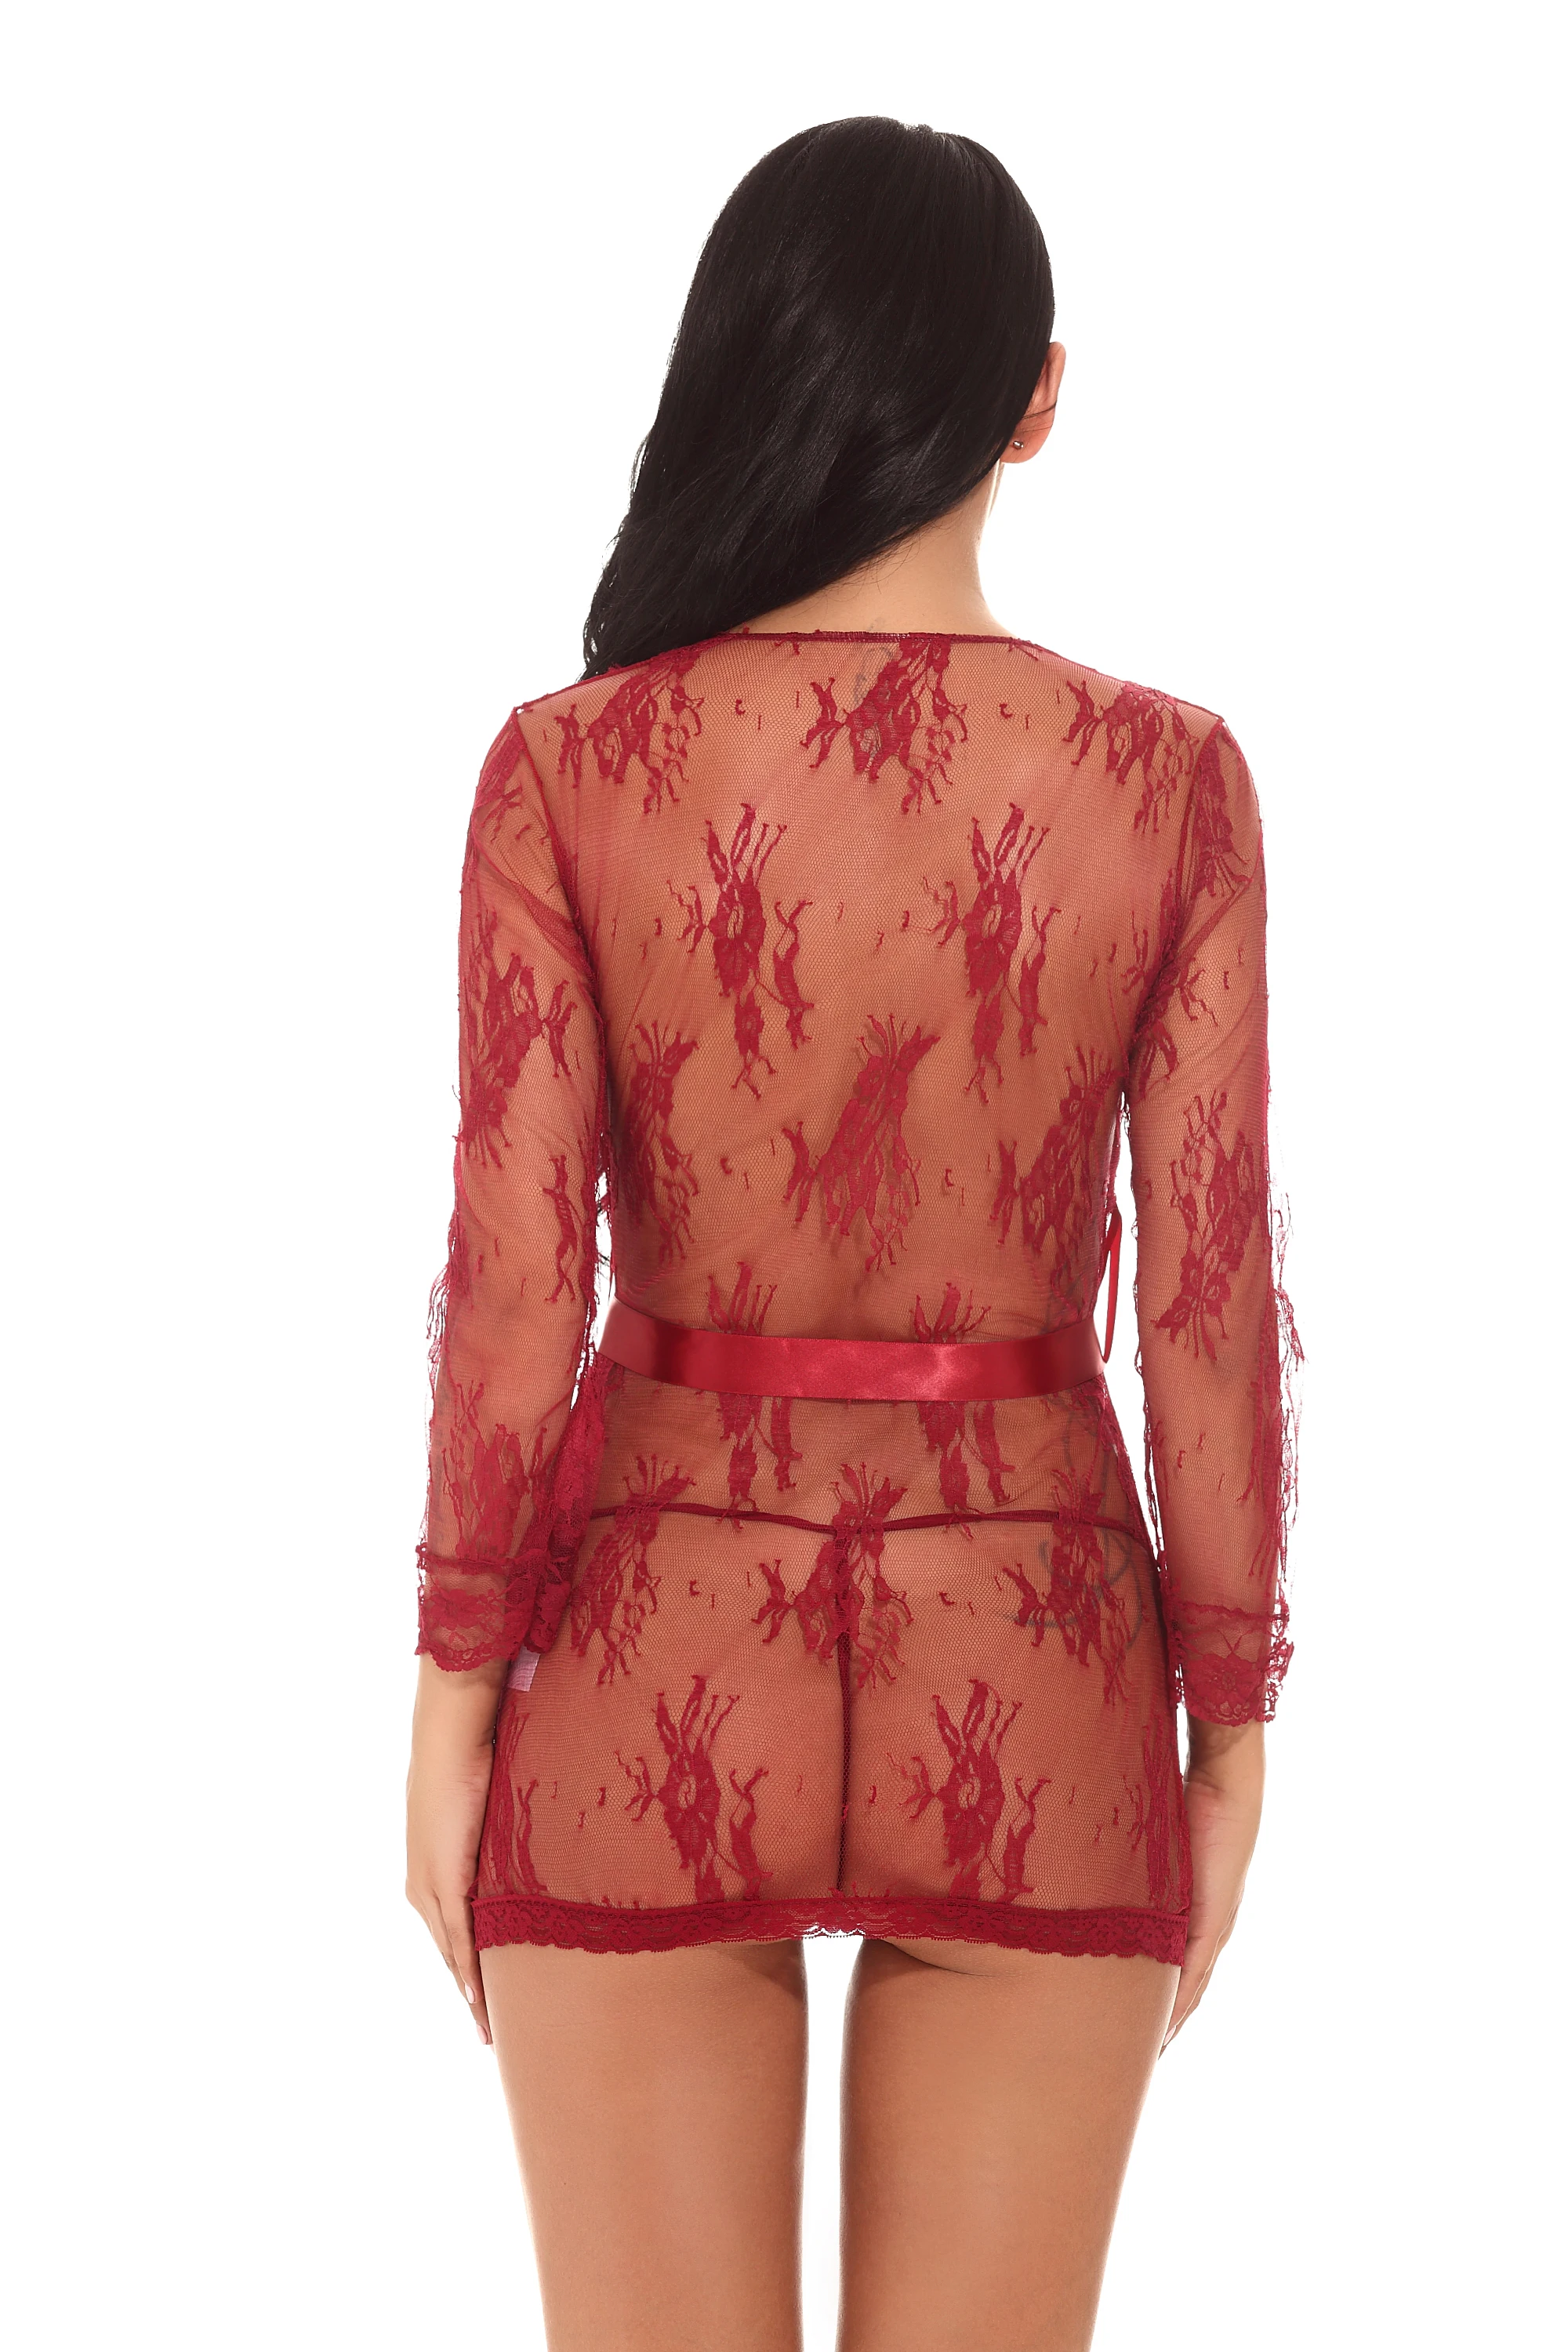 

2020 Sexy Women Lingerie Lady Underwear Lace Night Dress Muply Wine Red Babydoll Sleepwear with G-string Sleeping Wear Pyjamas